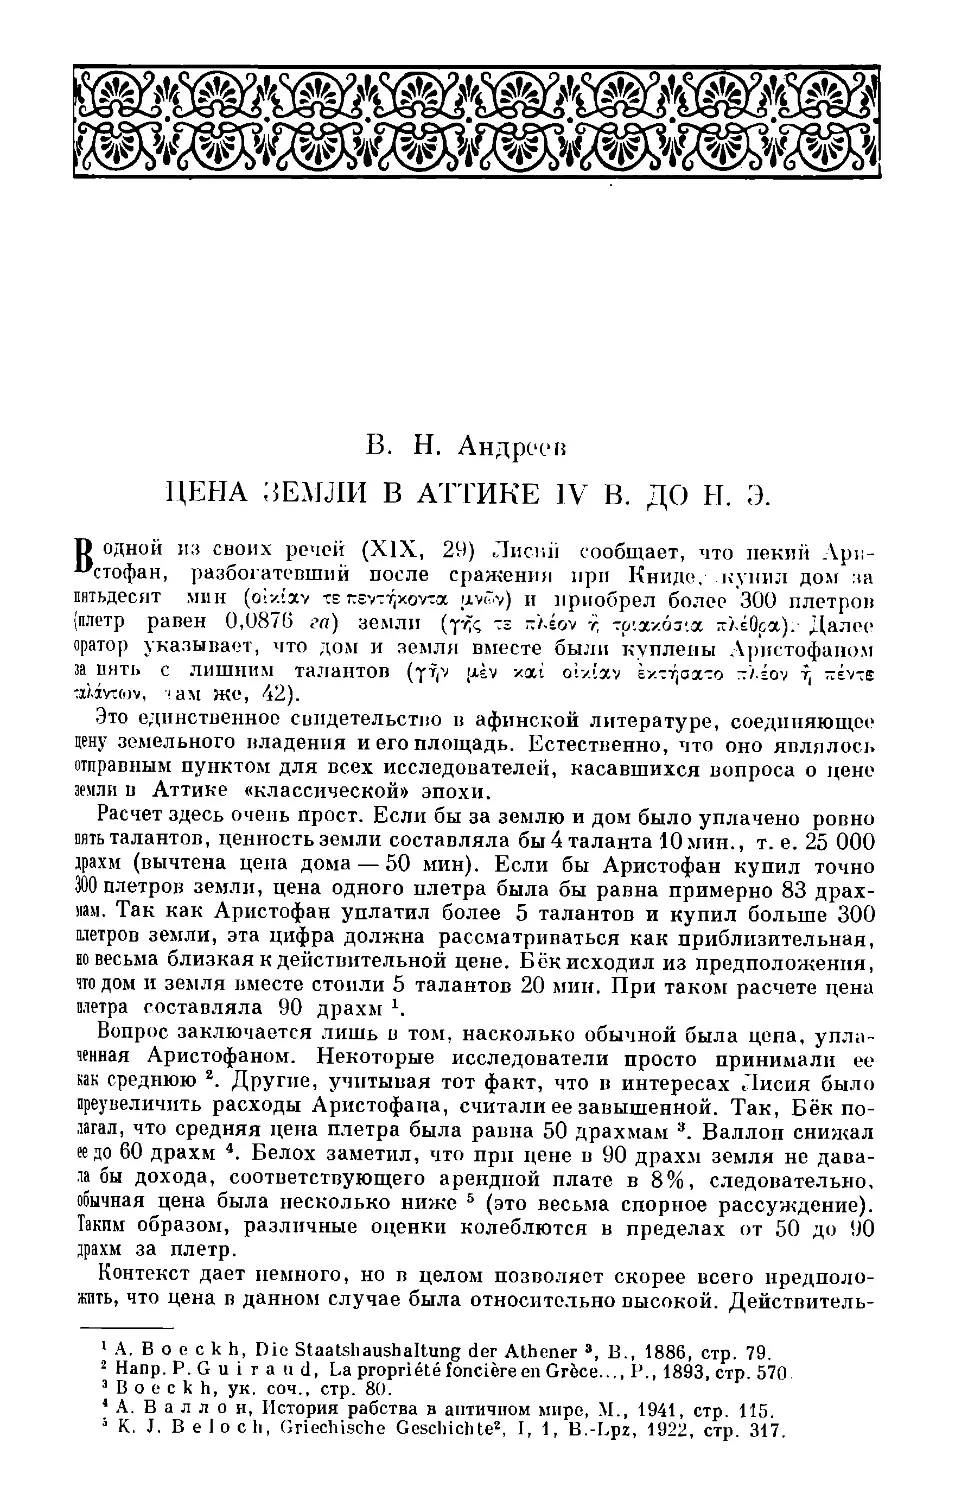 В. Н. Андреев — Цена земли в Аттике IV в. до н. э.